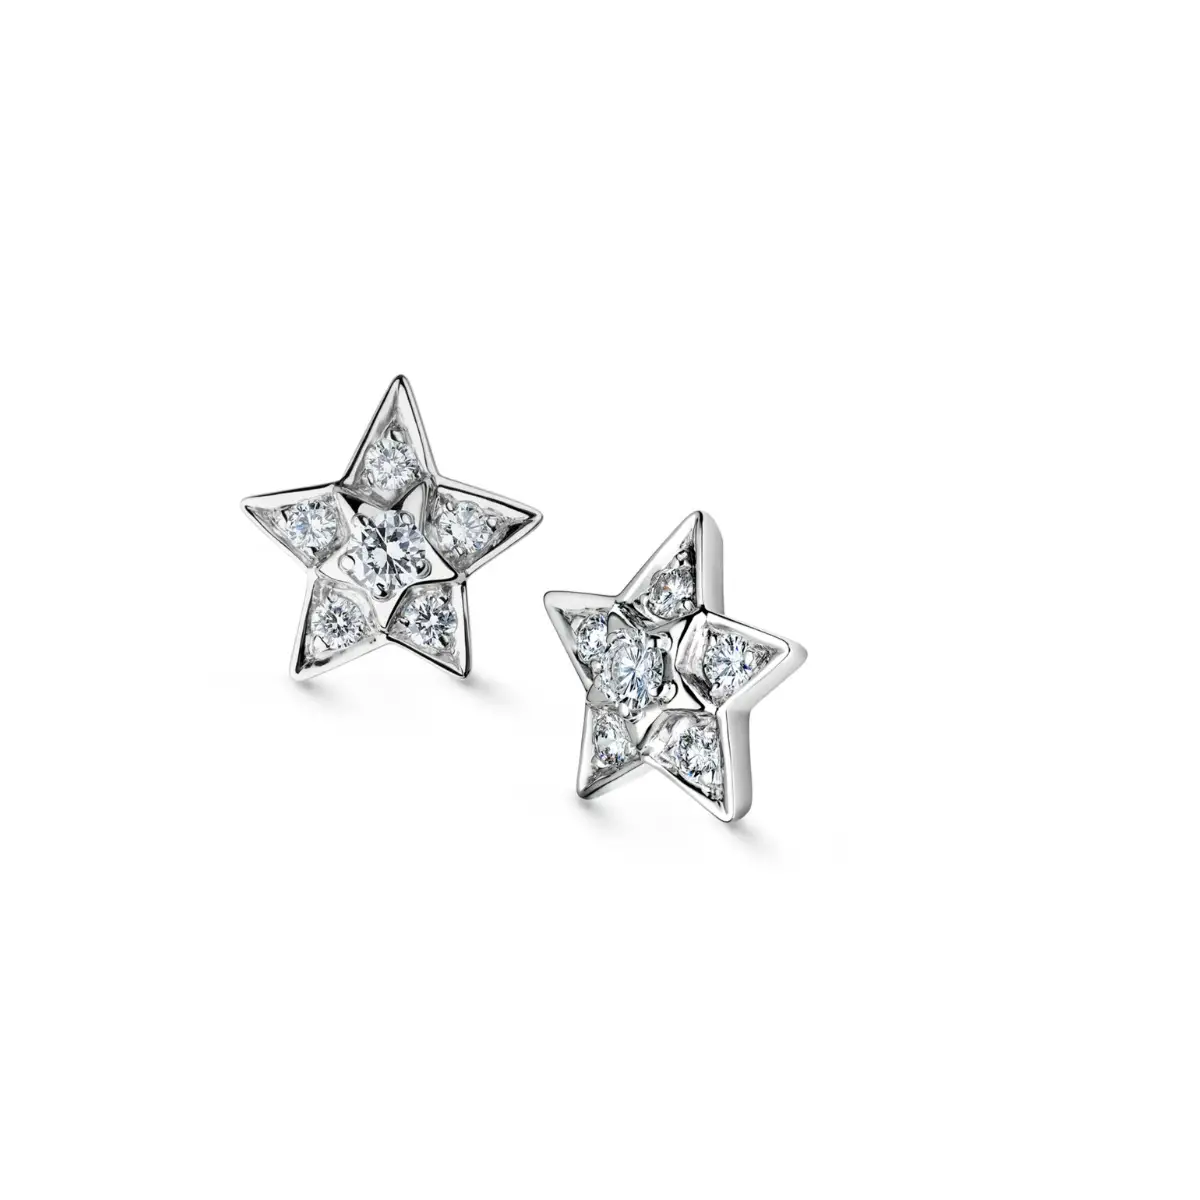 Queen Letizia of Spain's Chanel 'Comete'diamond earrings